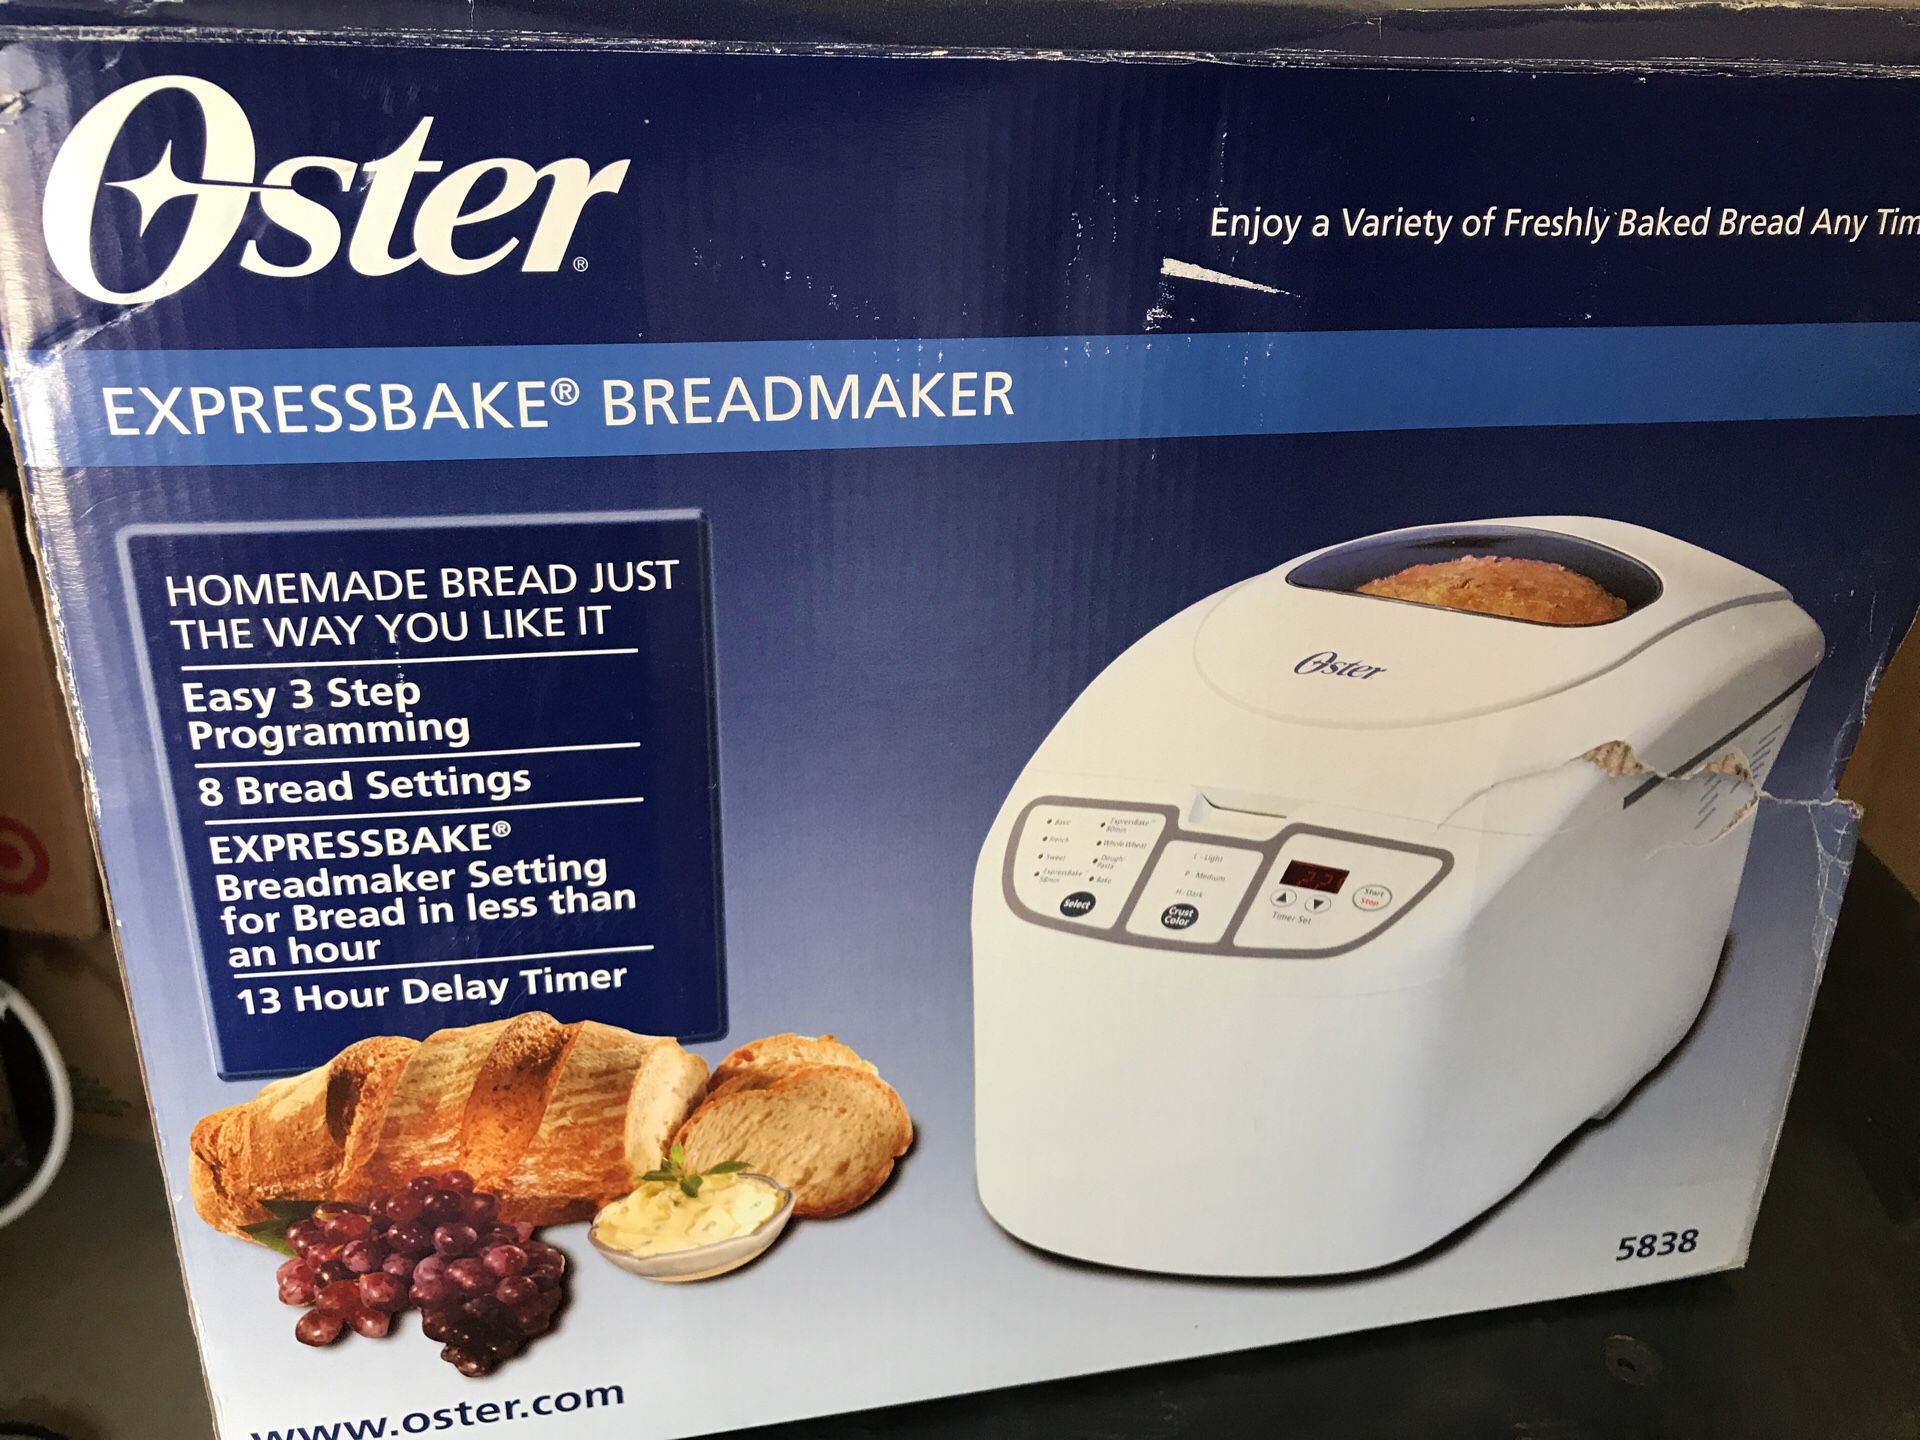 New bread maker